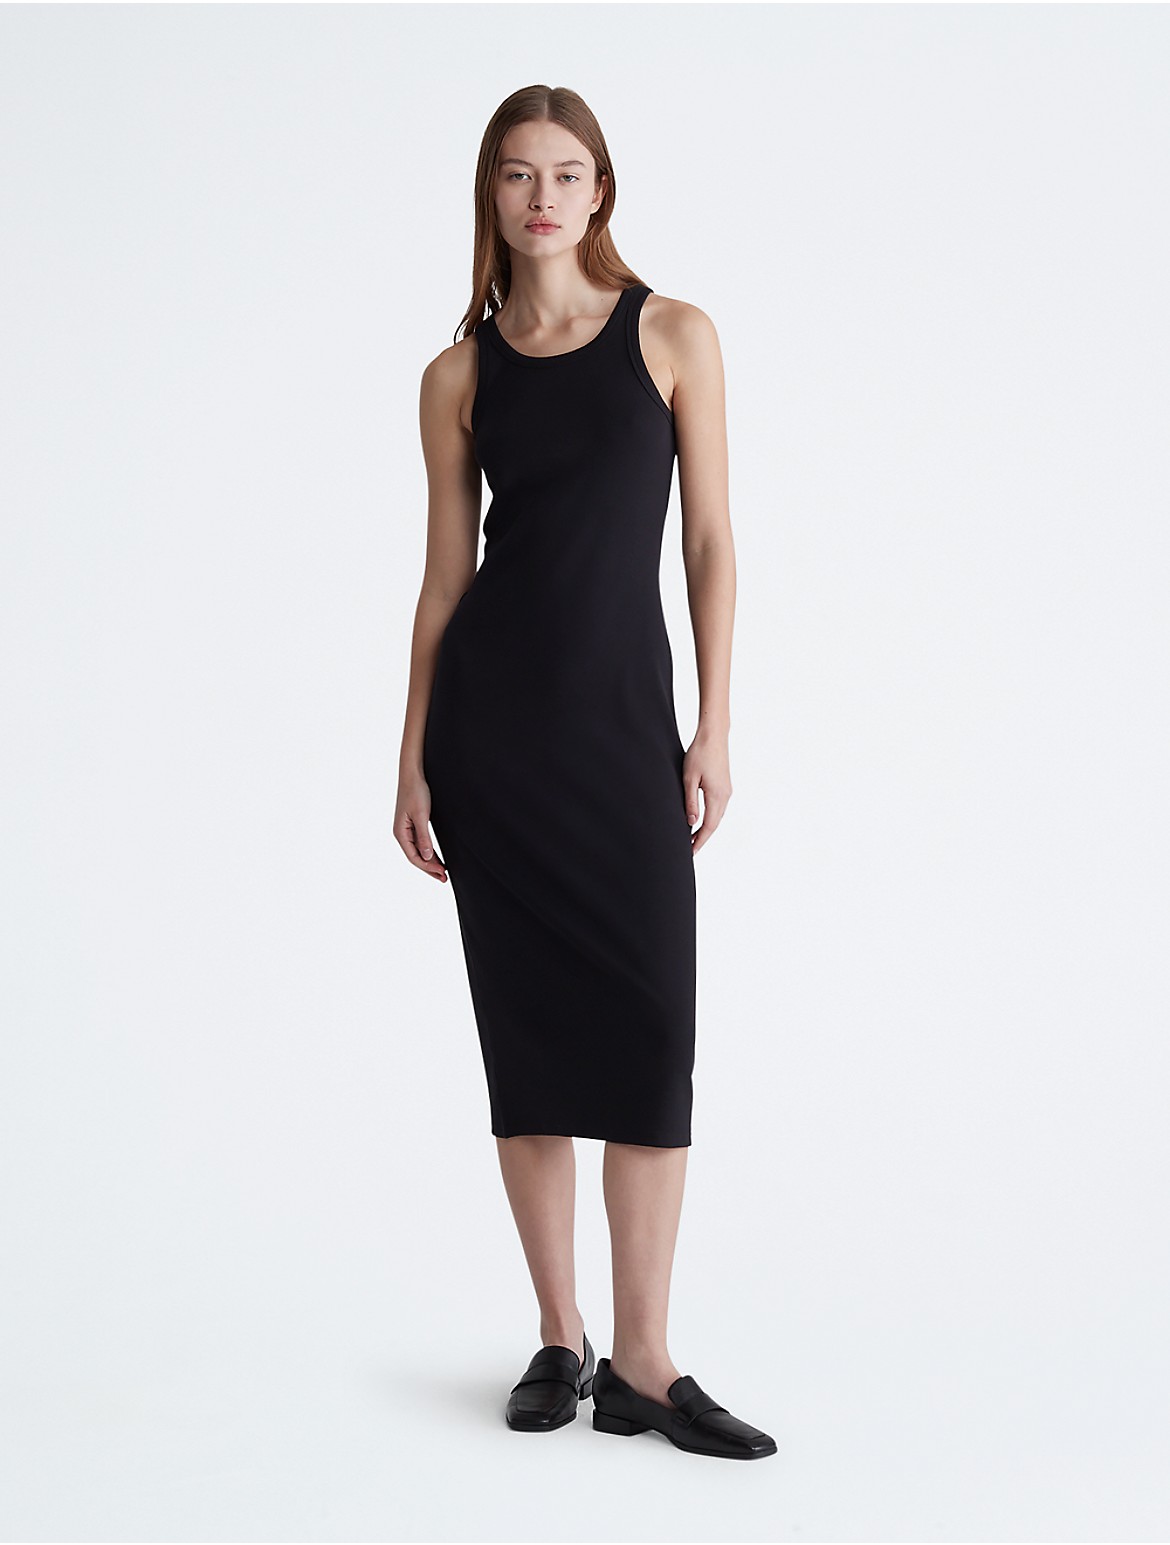 Calvin Klein Women's Cotton Contour Rib Tank Dress - Black - XS